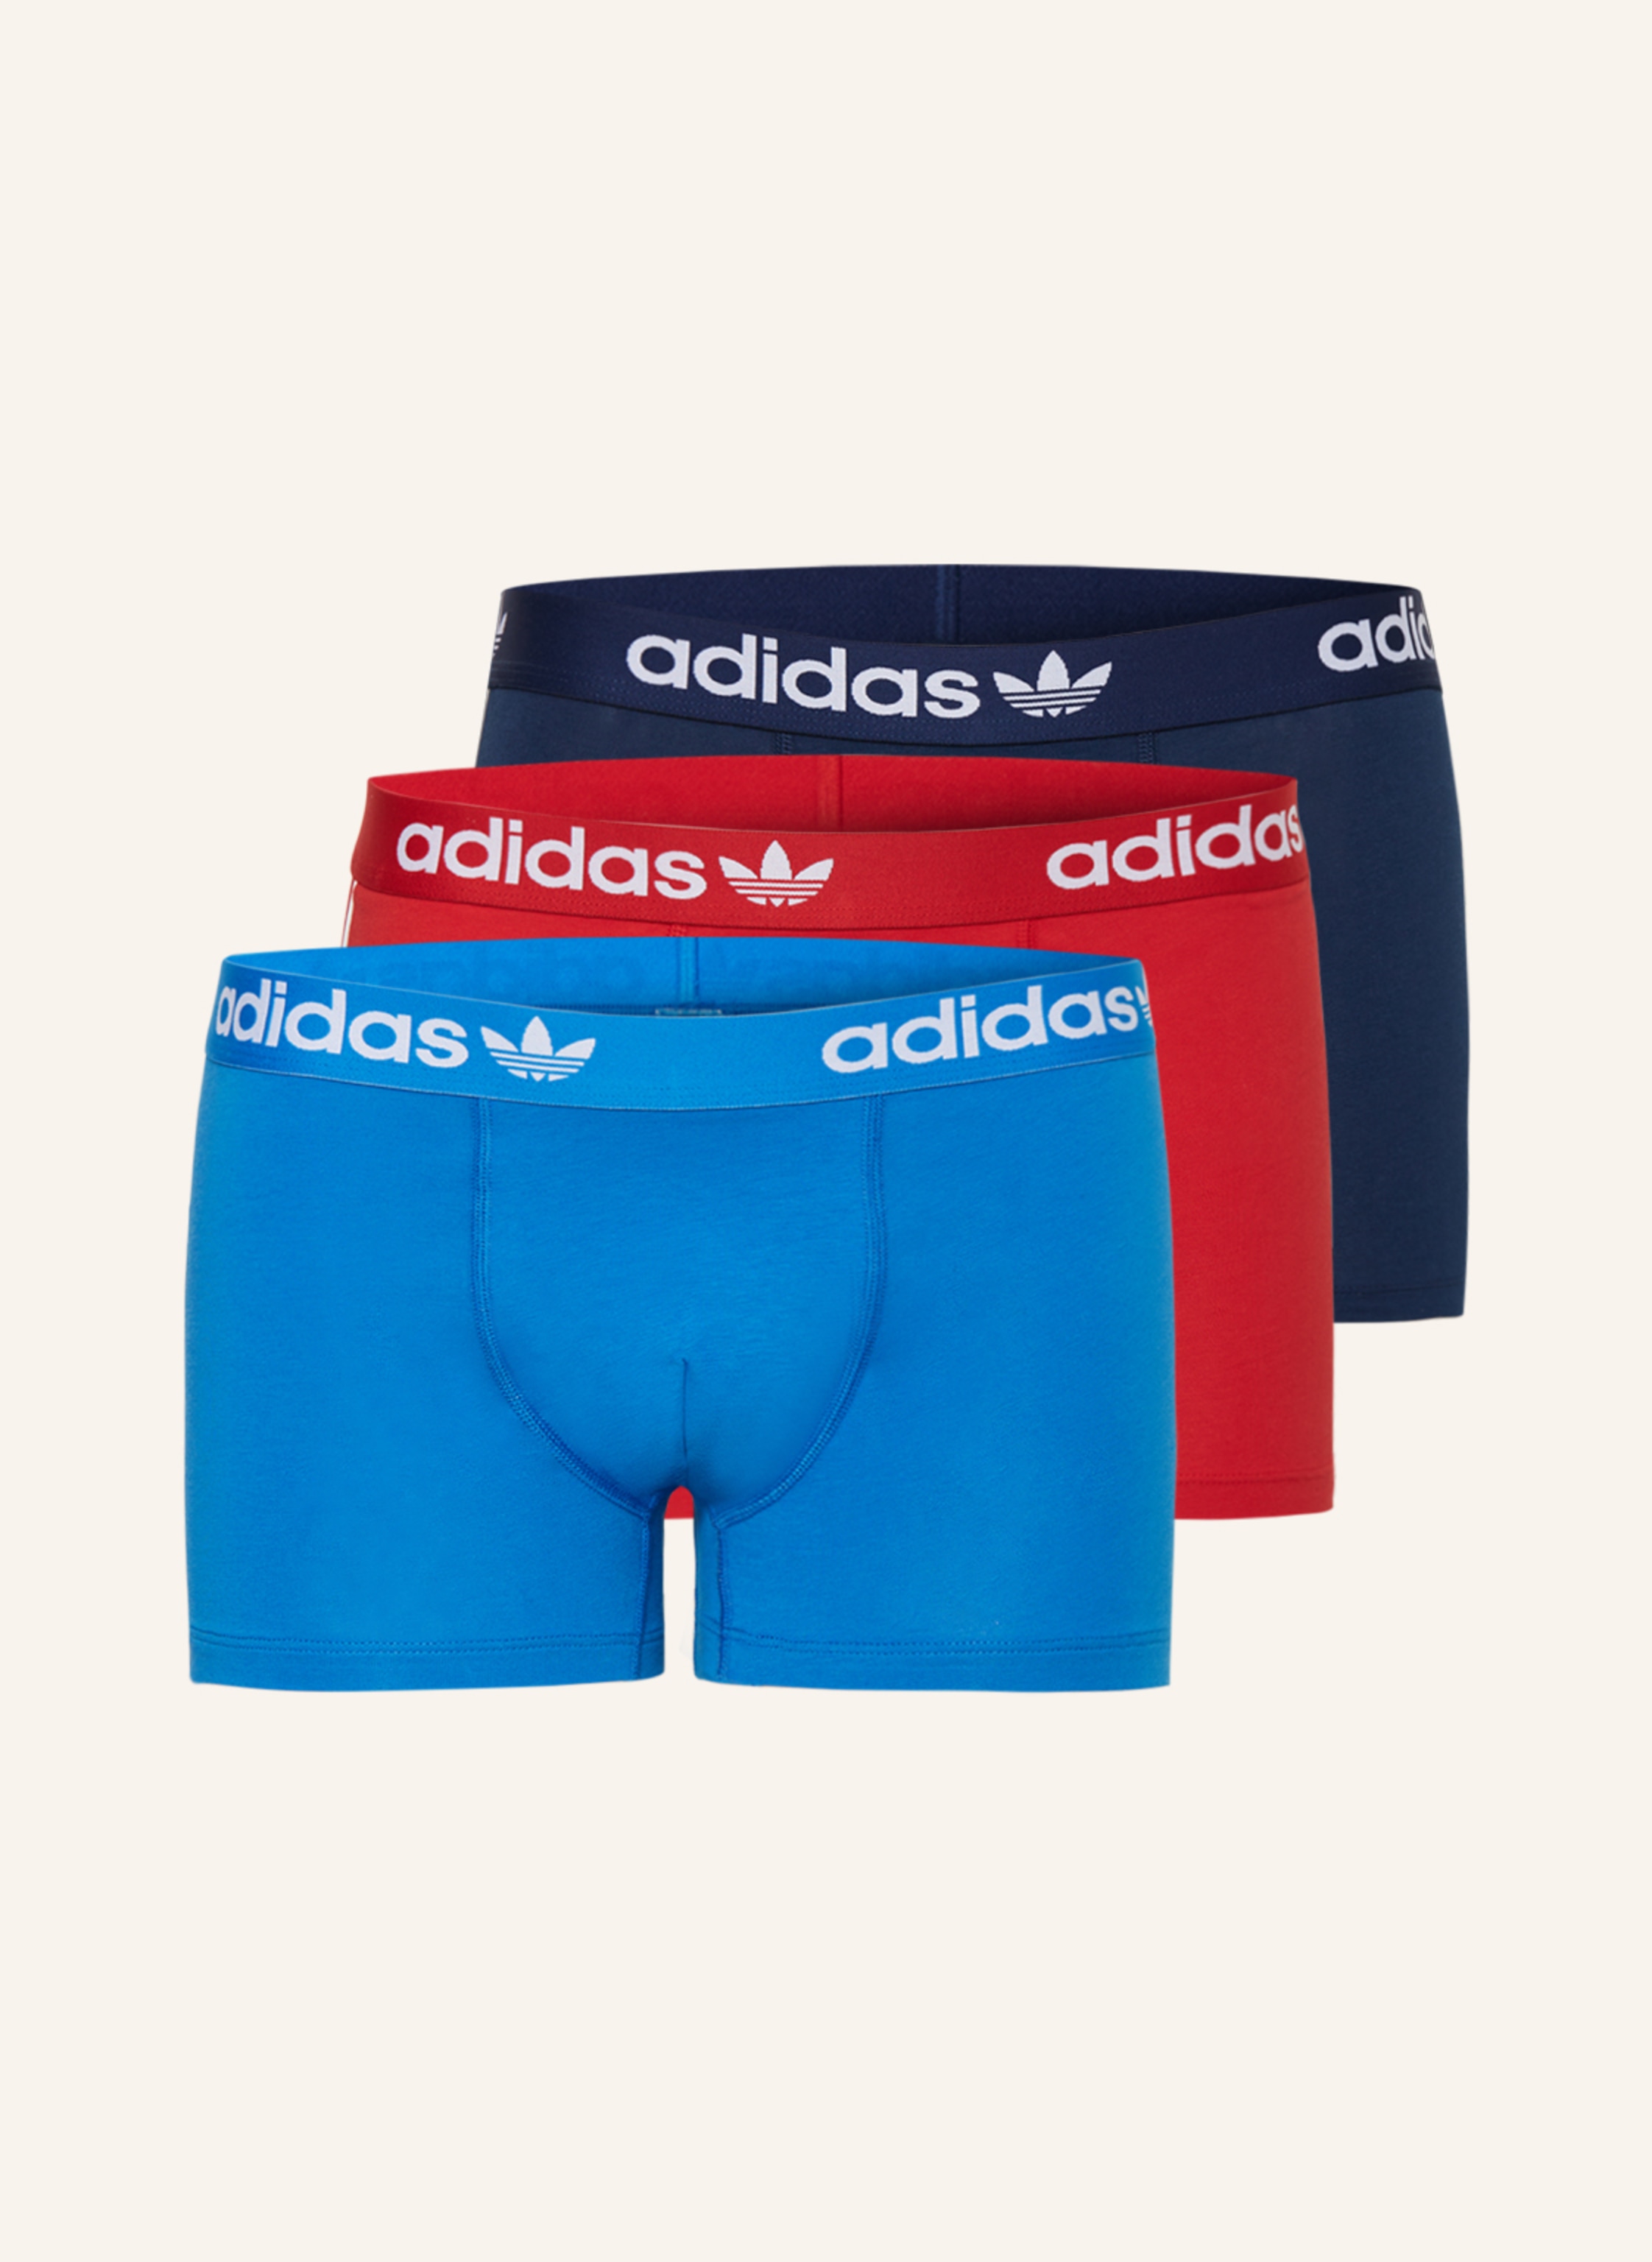 Originals 3er-Pack adidas in blau/ rot FLEX Boxershorts 3-STRIPES COTTON dunkelblau/ COMFORT